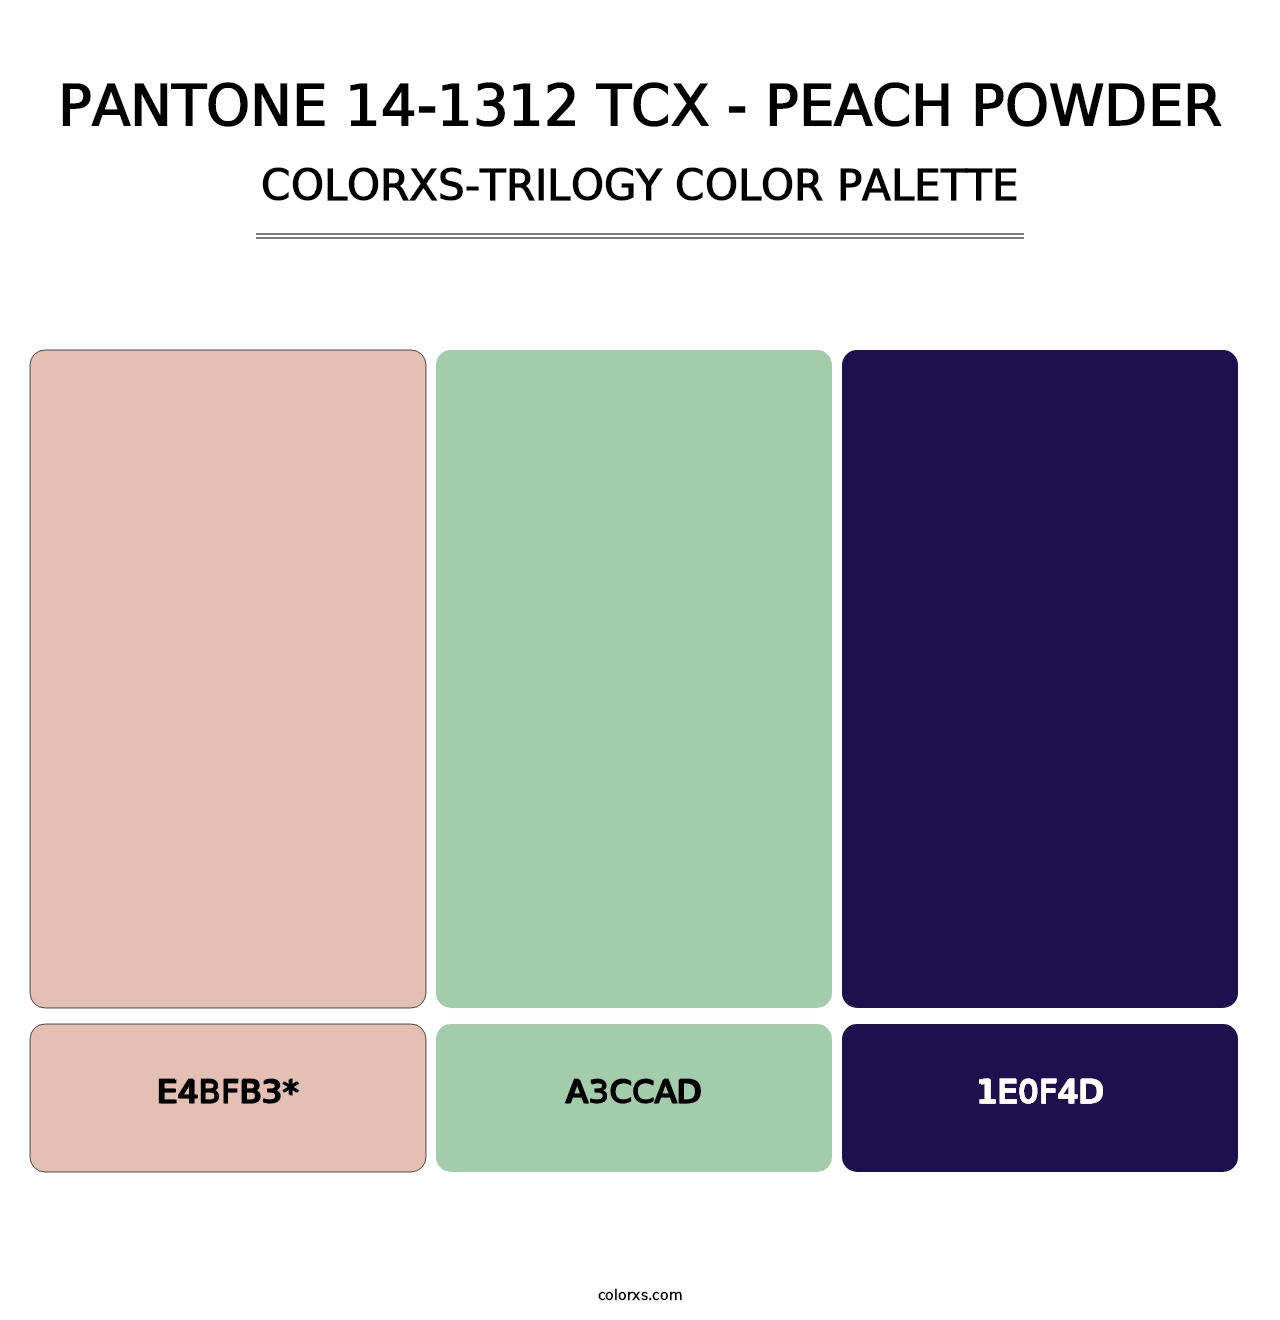 PANTONE 14-1312 TCX - Peach Powder - Colorxs Trilogy Palette